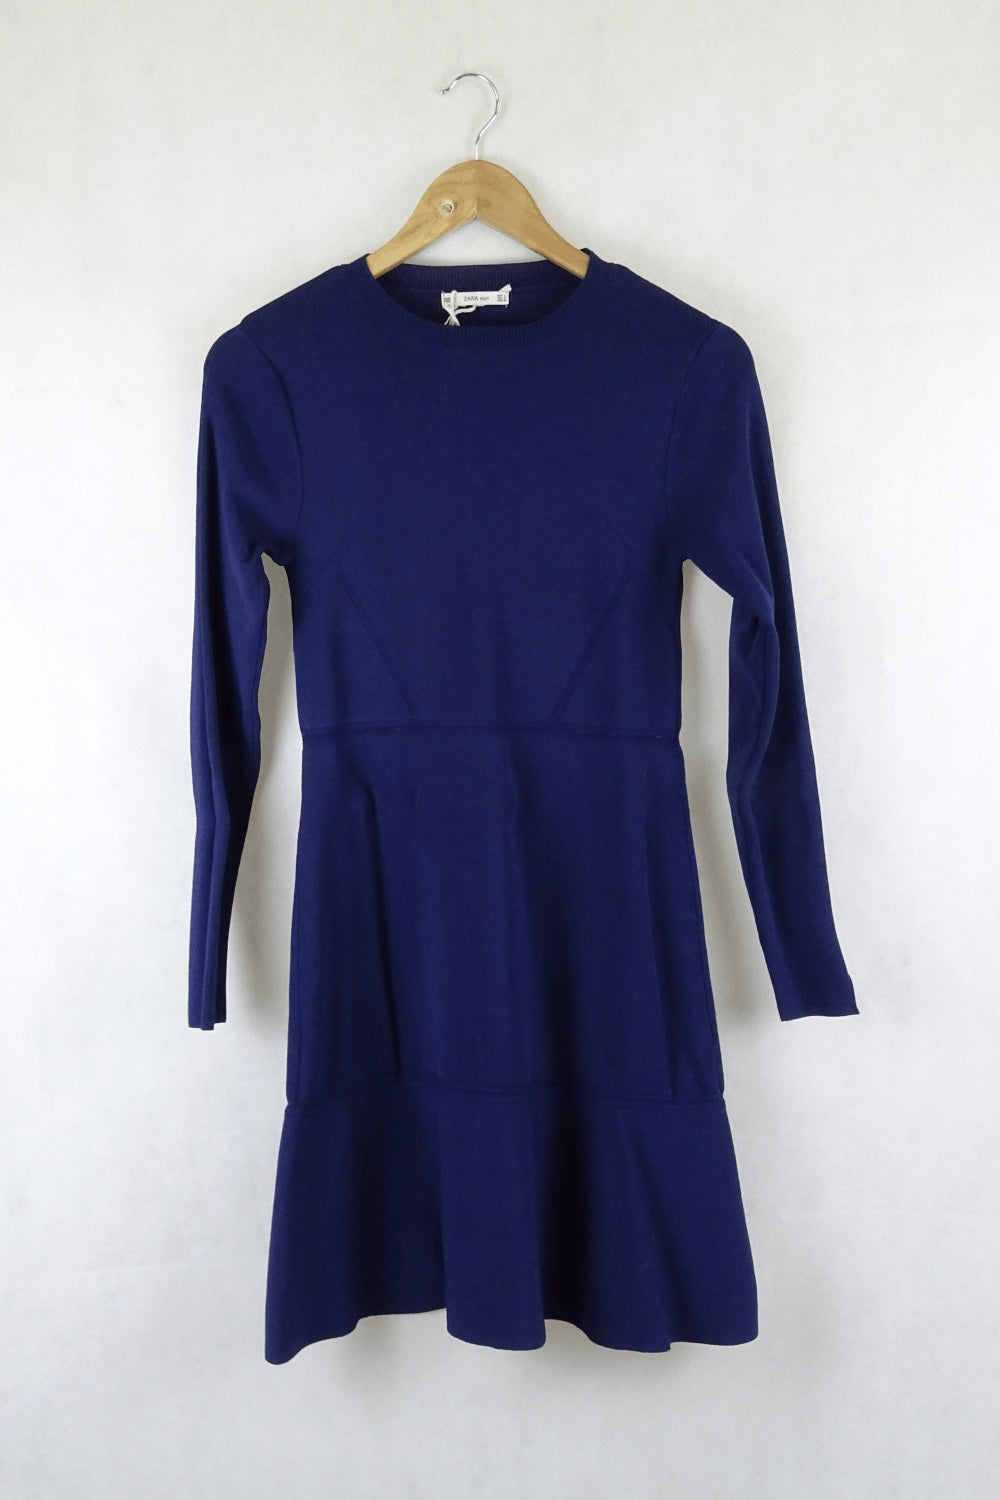 Zara Blue Knit Dress L